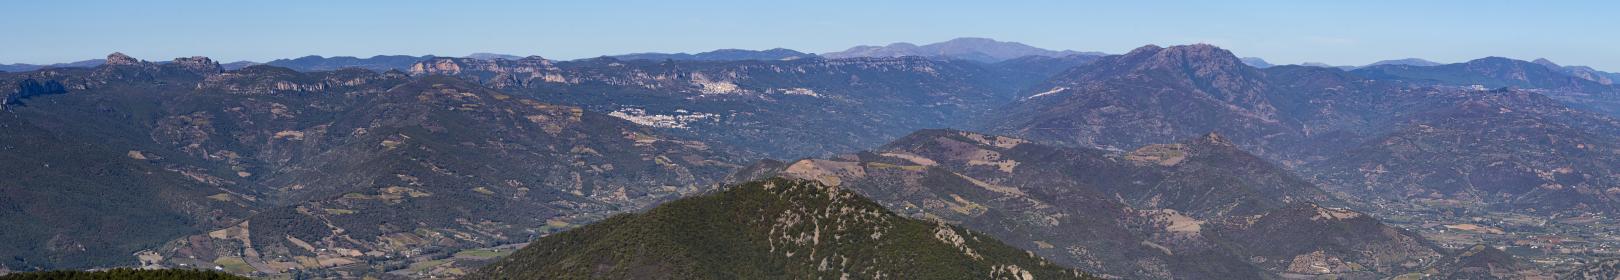 Valle del Pardu e Gennargentu osservati da Monteferru (Cardedu) - foto C.Mascia